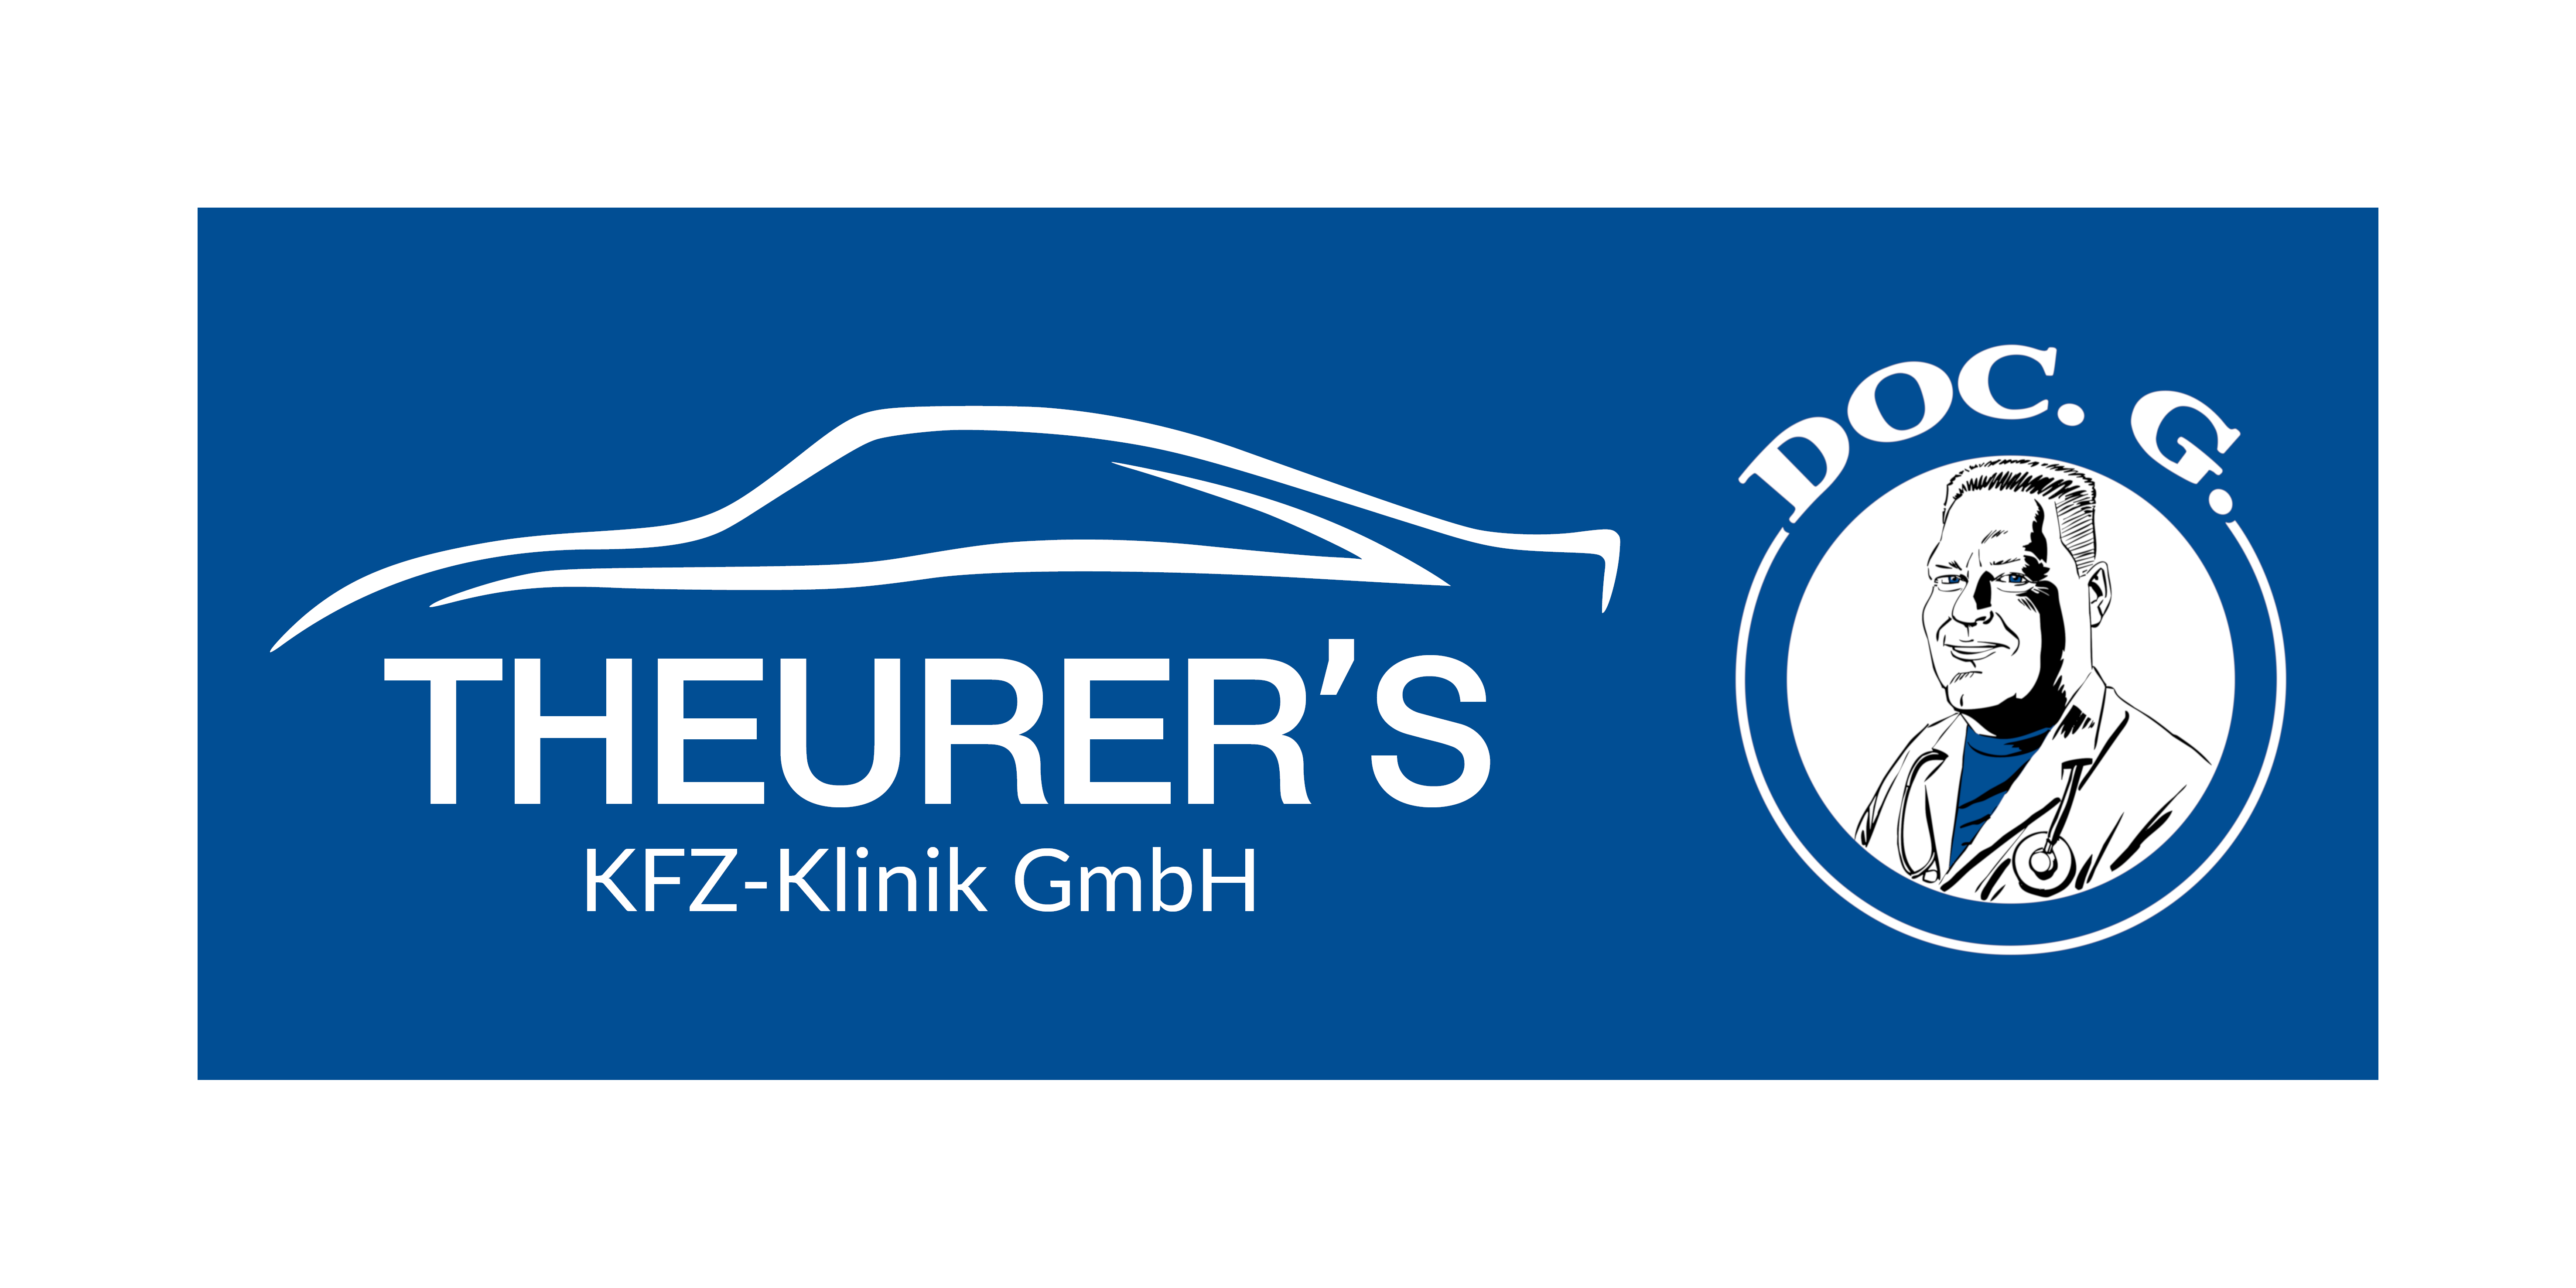 Theurer's KFZ-Klinik